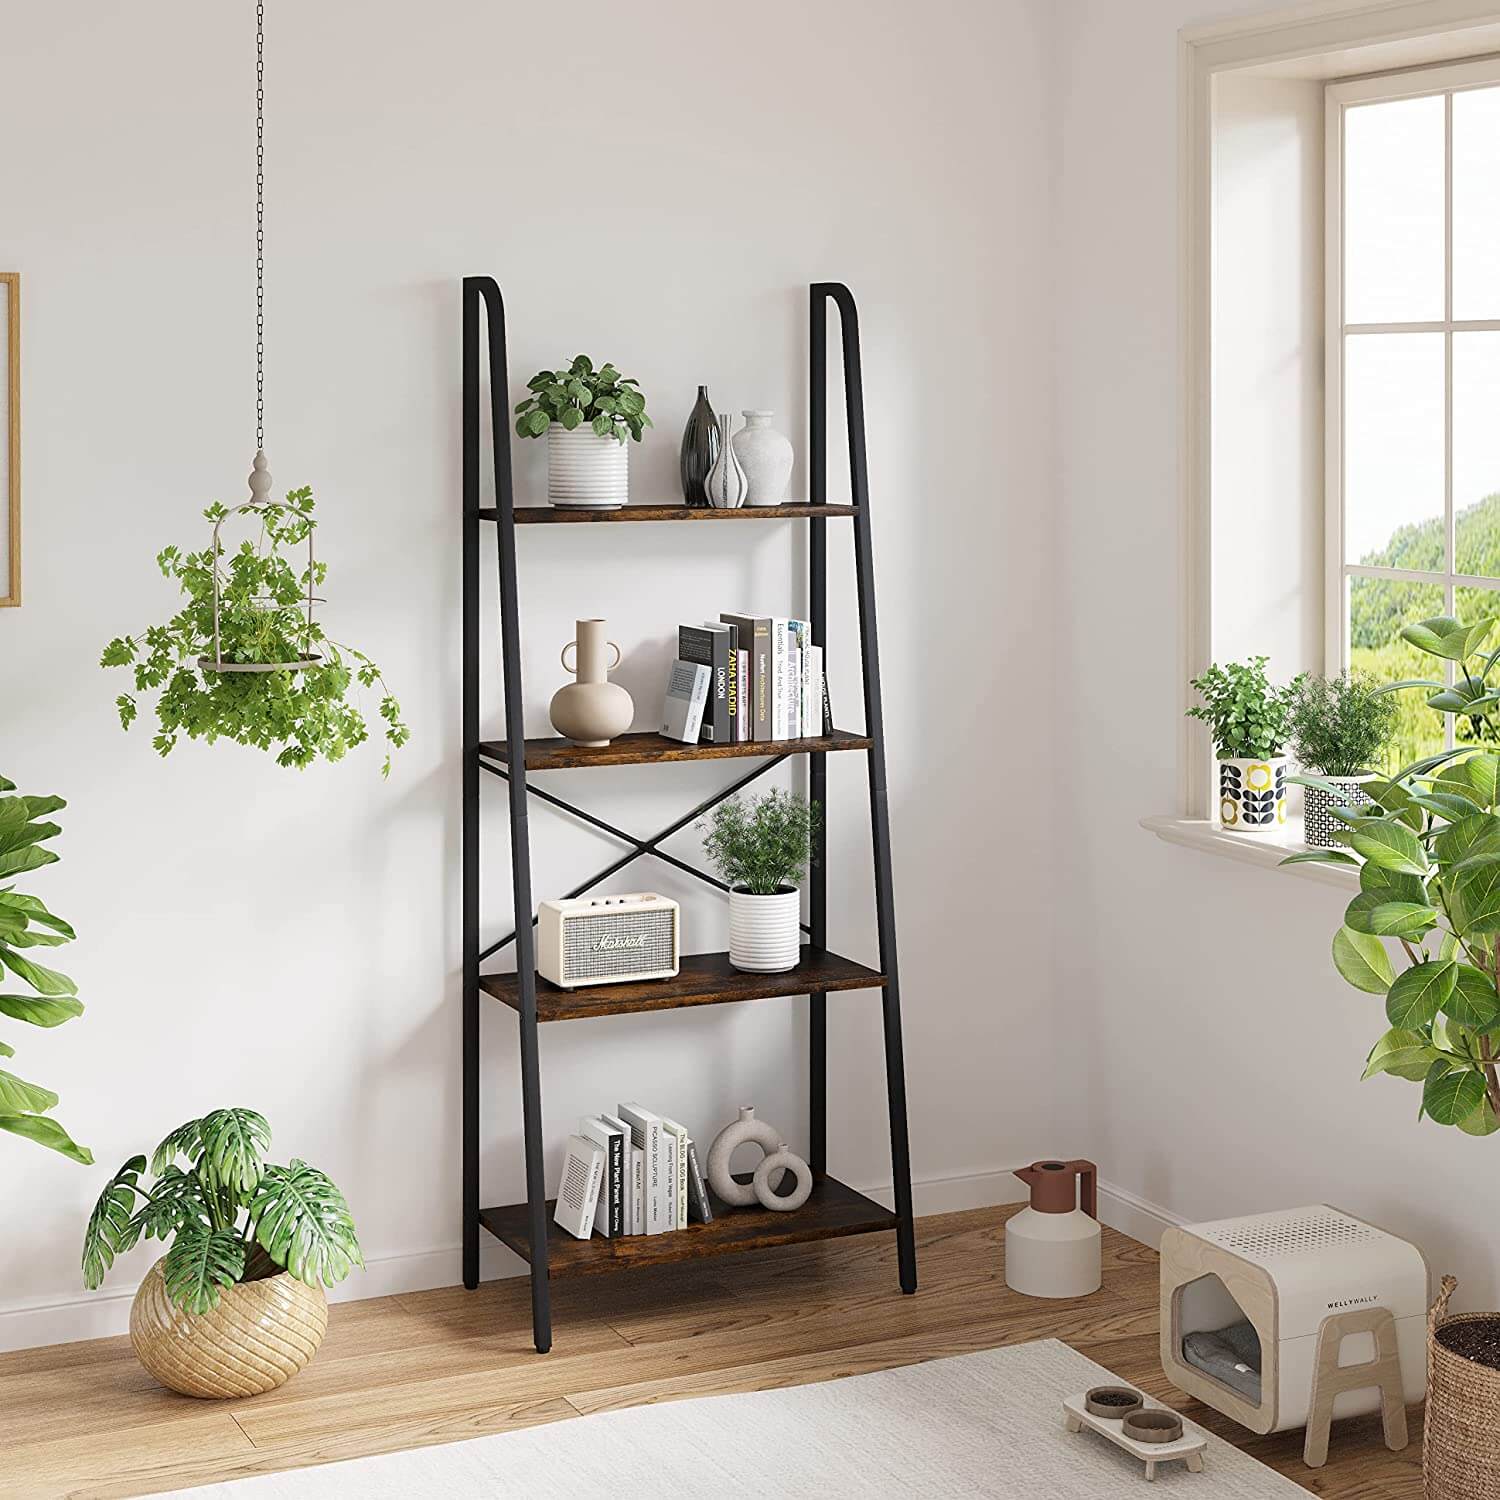 Is a Ladder Shelf Worth It?